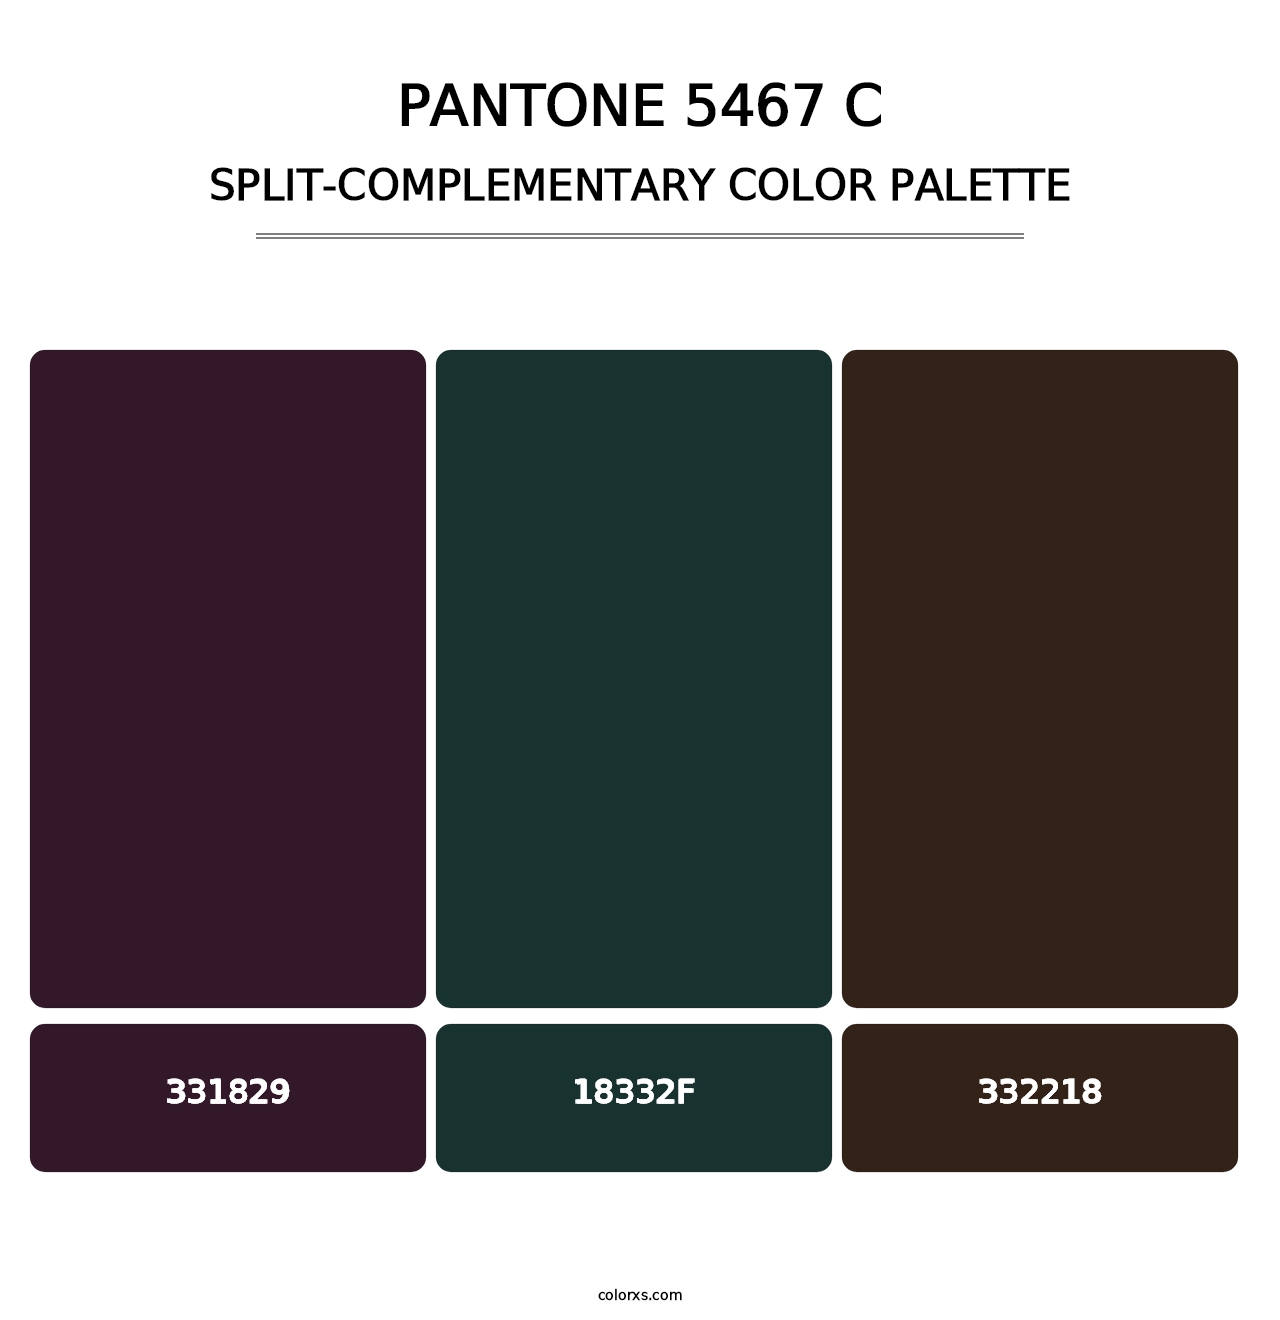 PANTONE 5467 C - Split-Complementary Color Palette